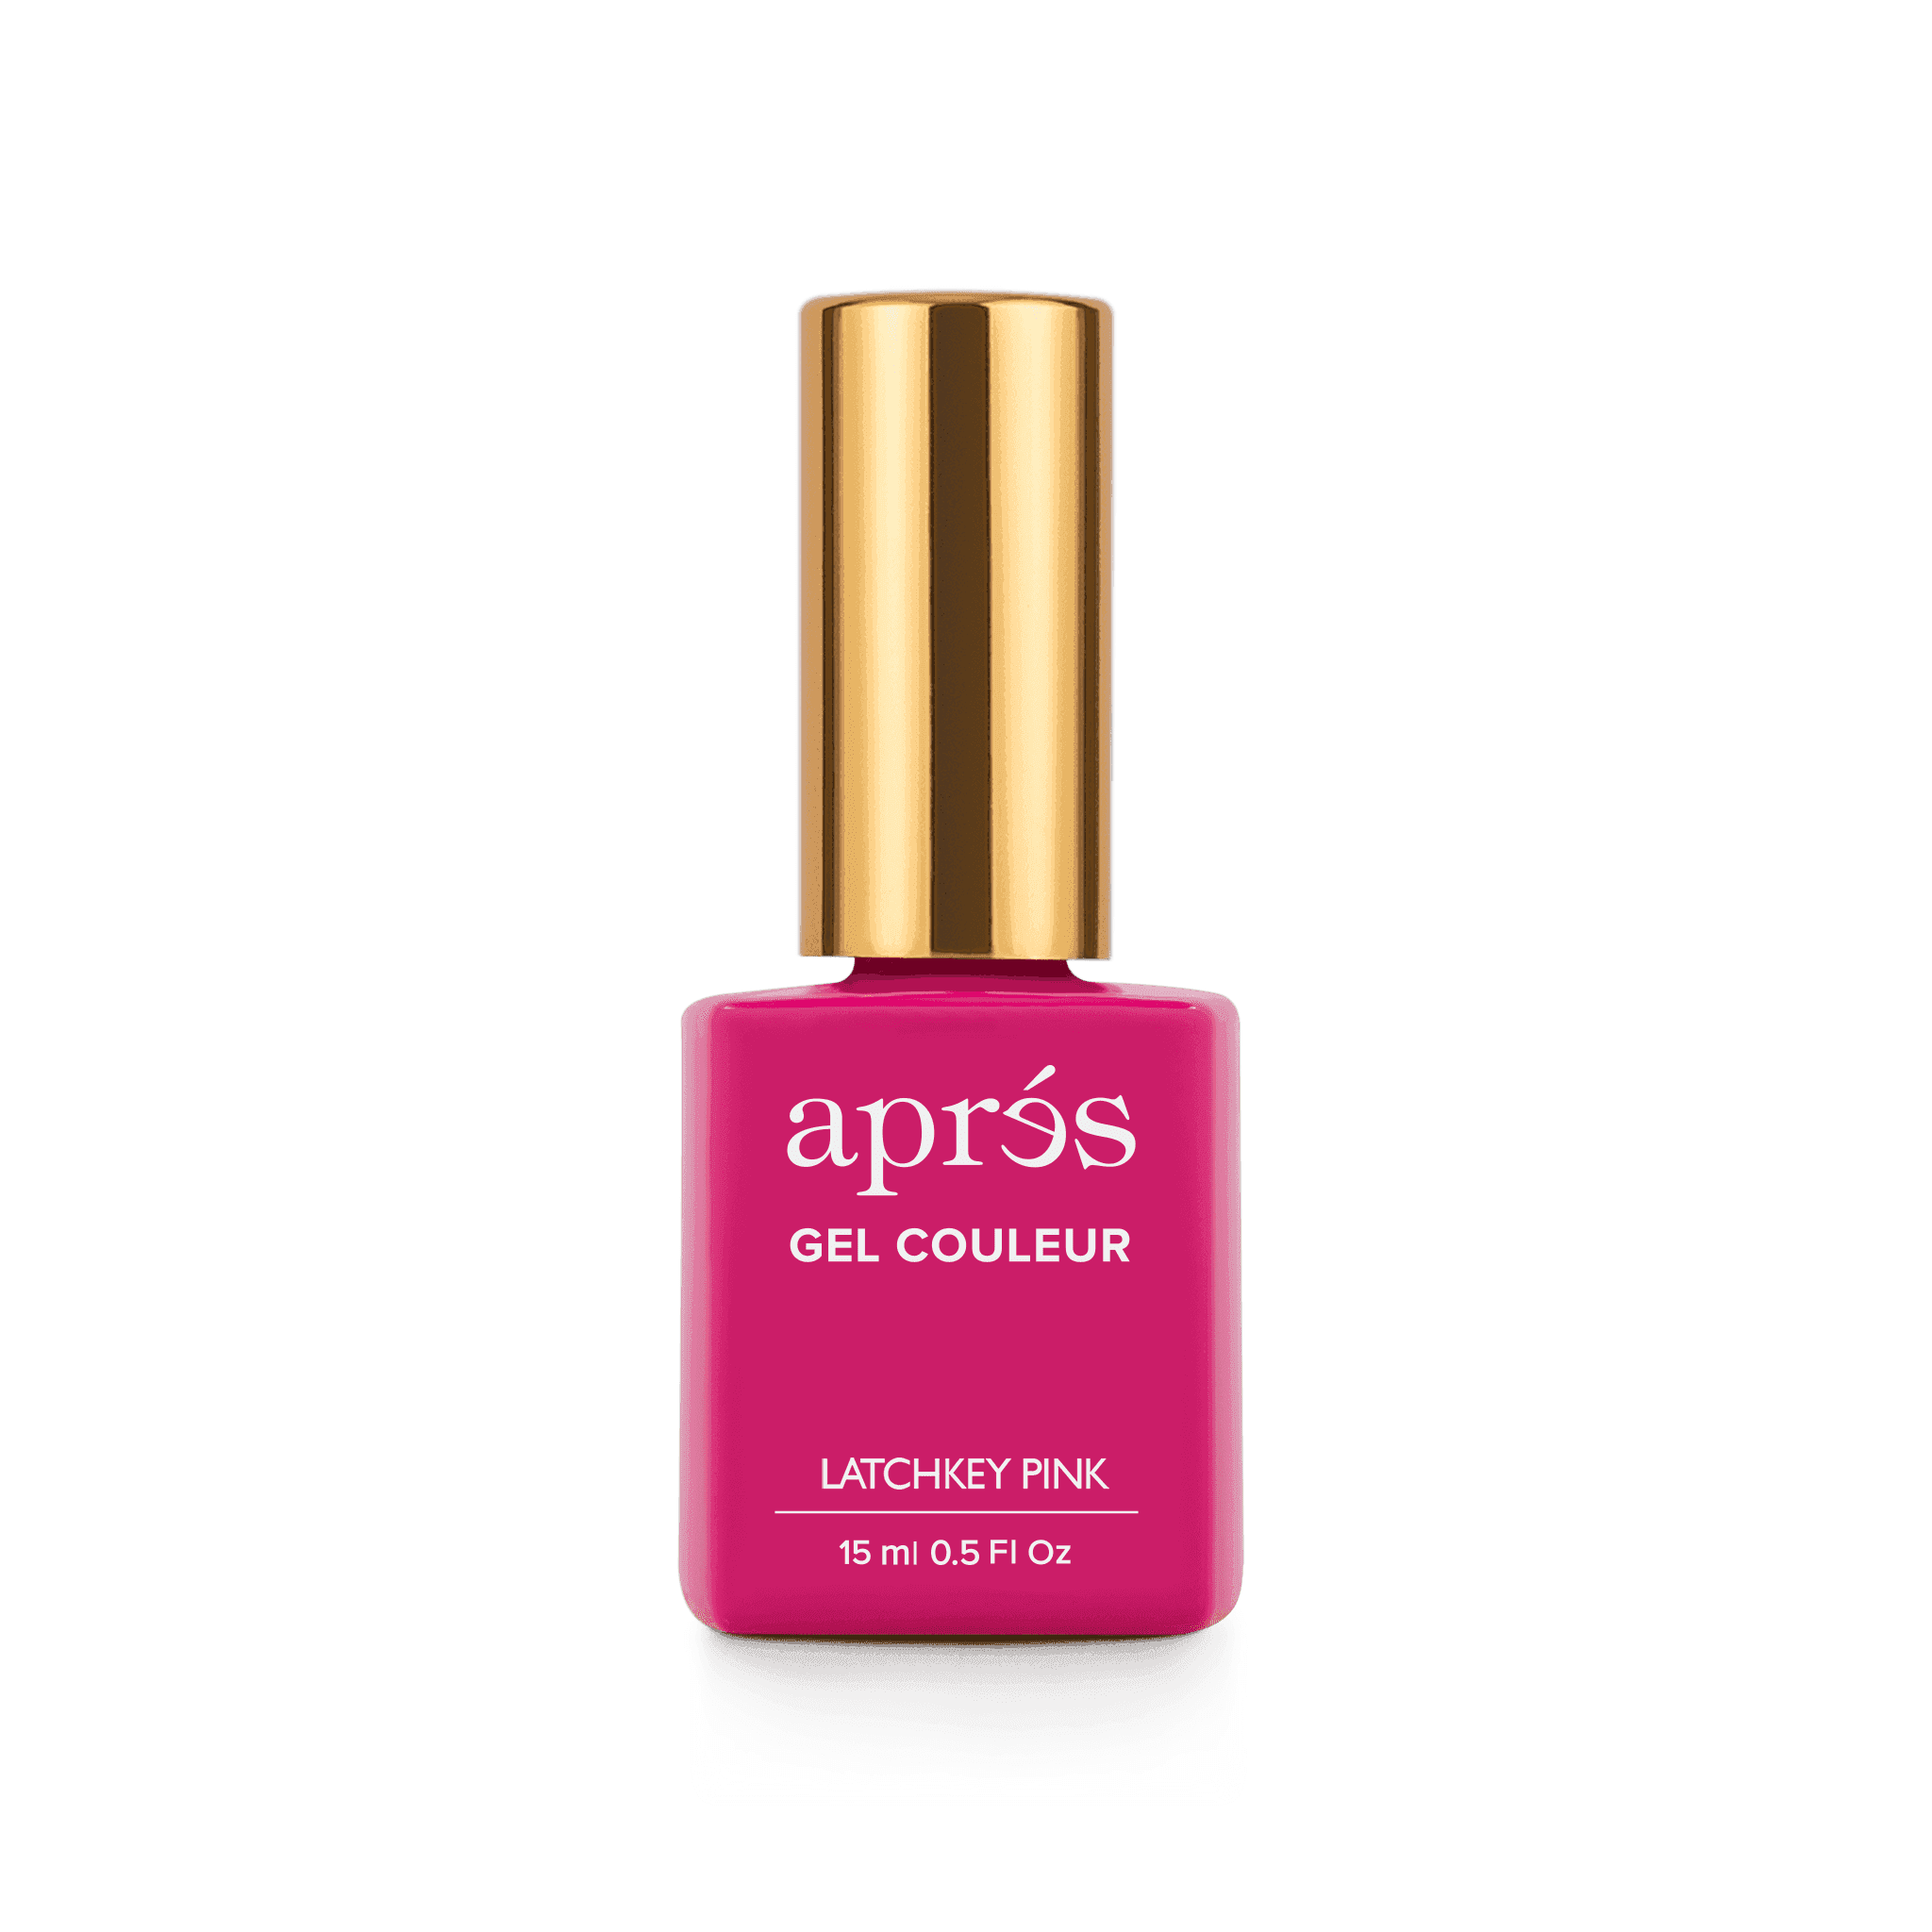 Aprés Latchkey Pink	Gel Couleur	APGC213